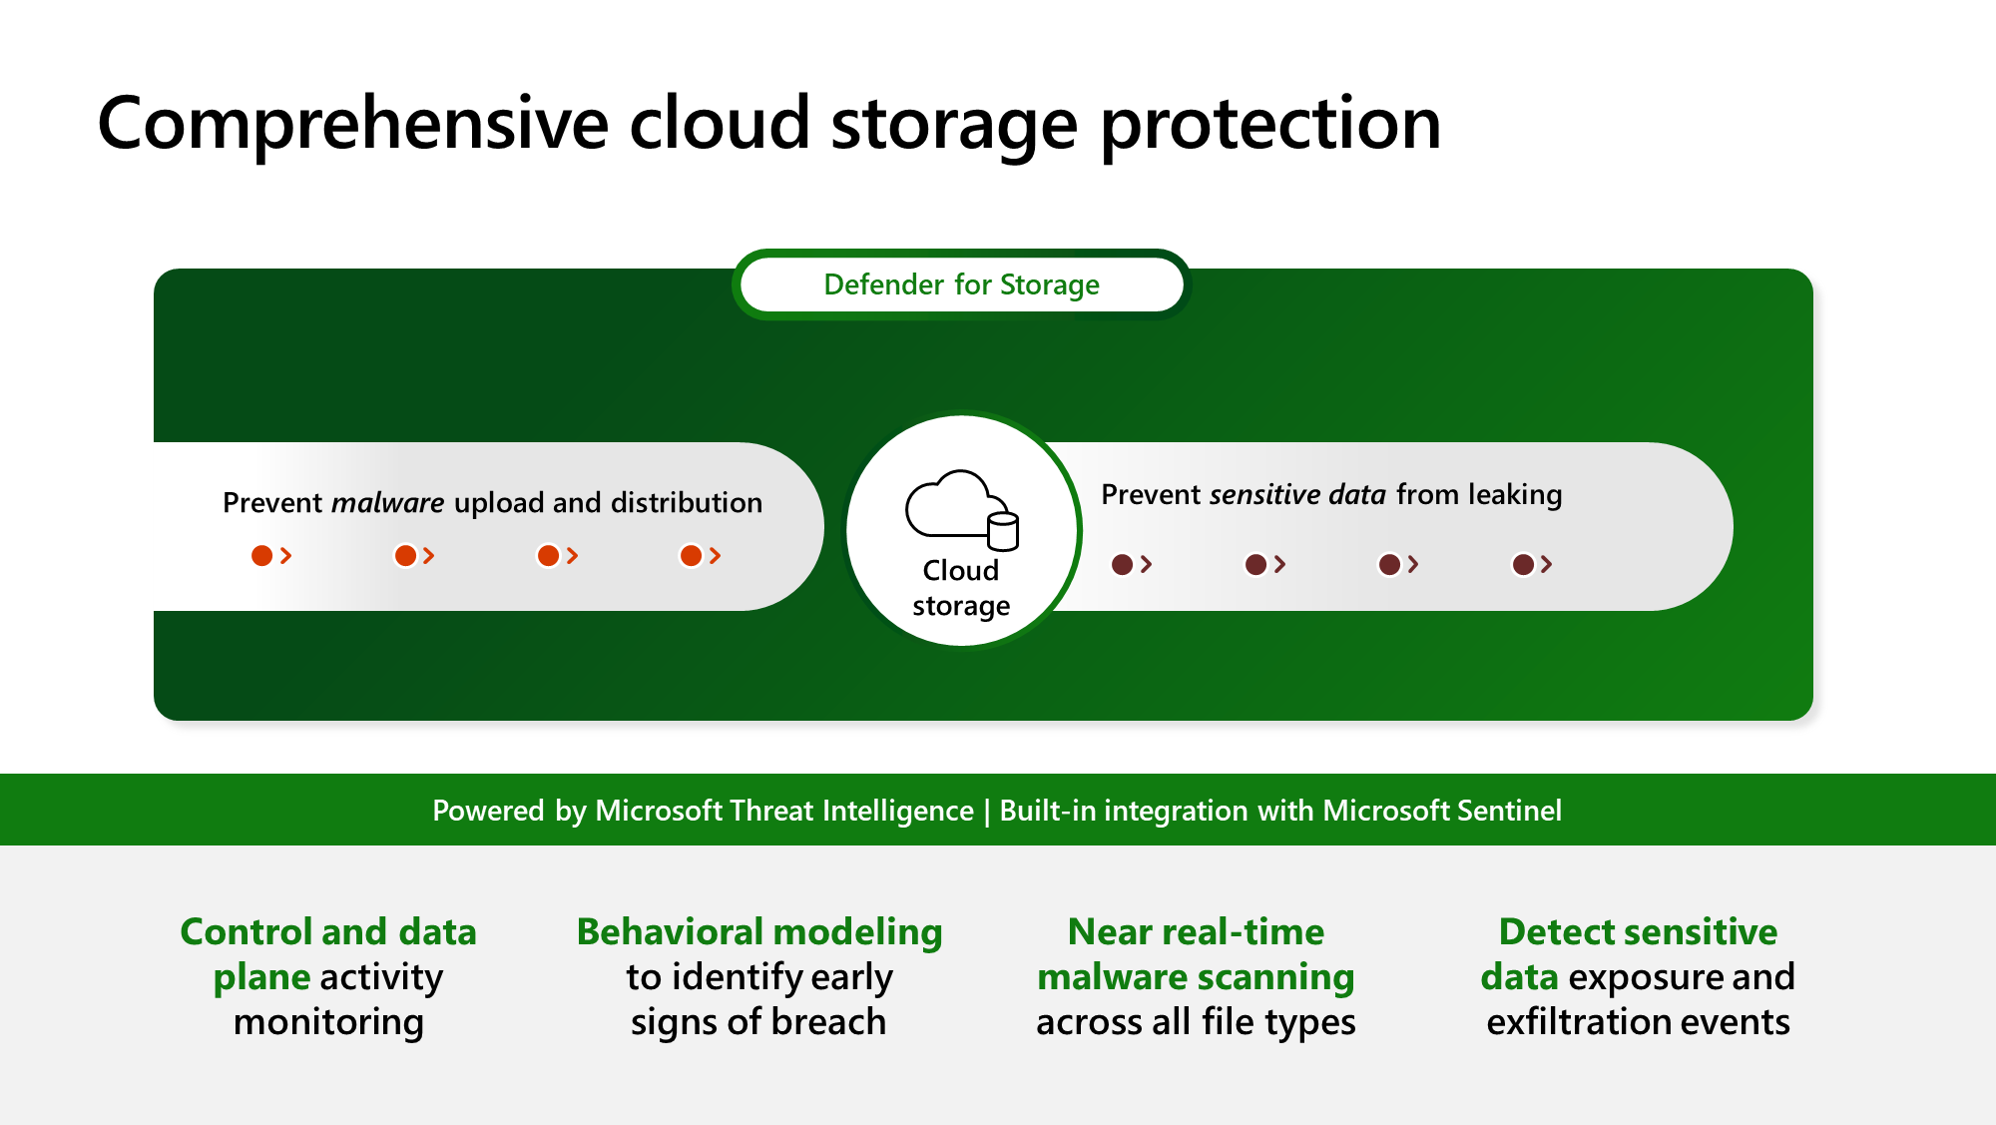 Diagrama que muestra las ventajas de usar Defender para Storage para proteger los datos.